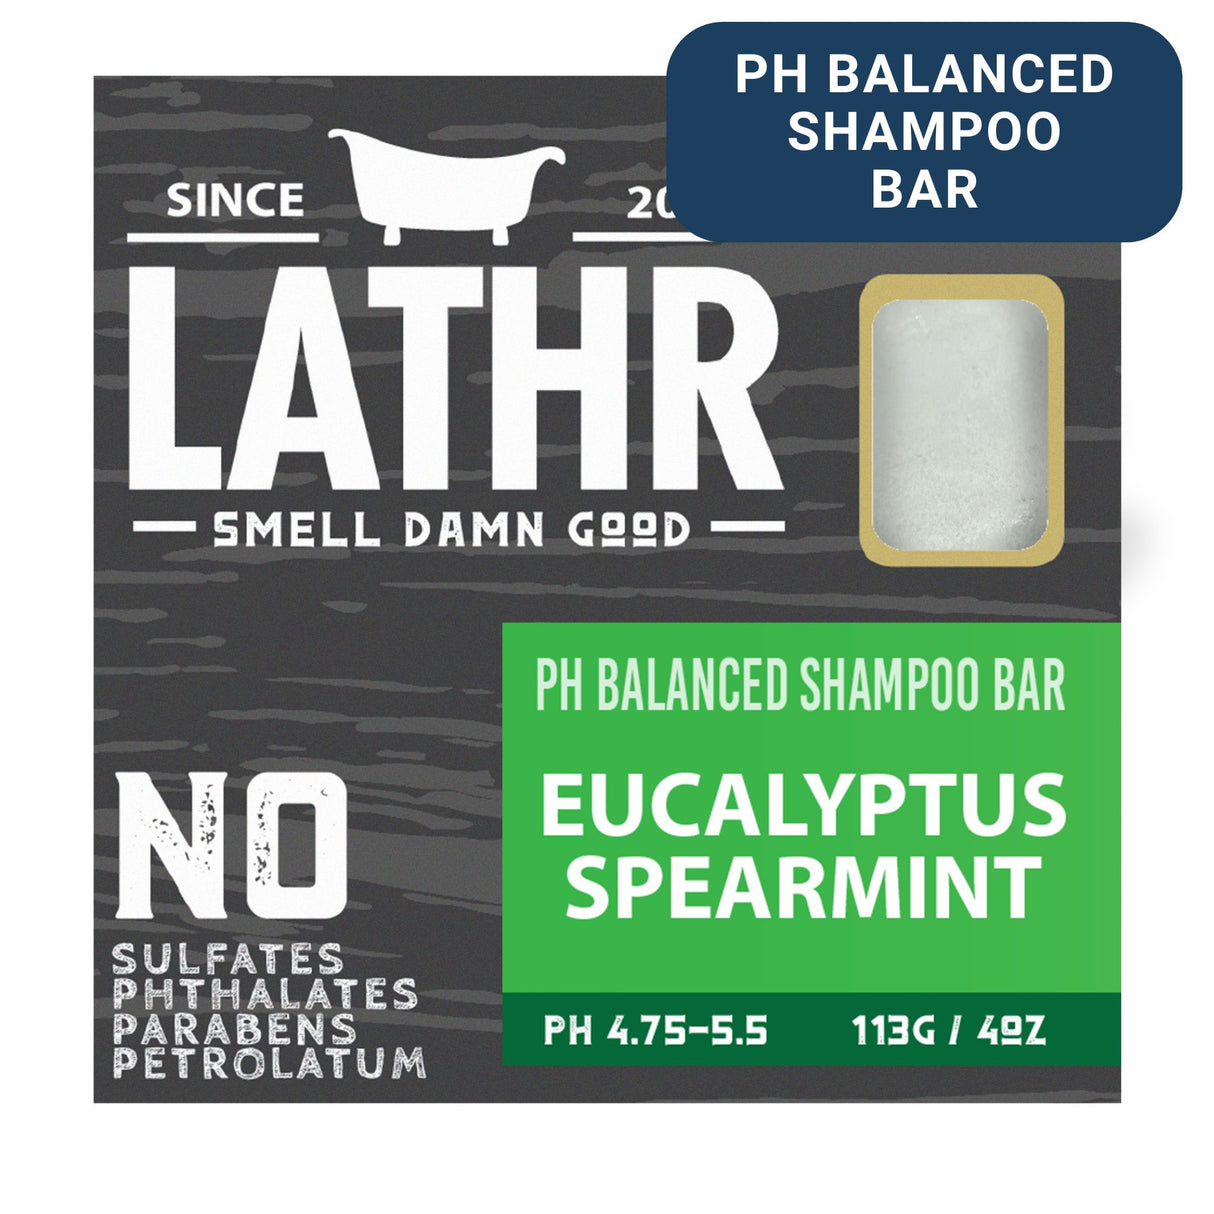 Shampoo Bar - Eucalyptus Spearmint